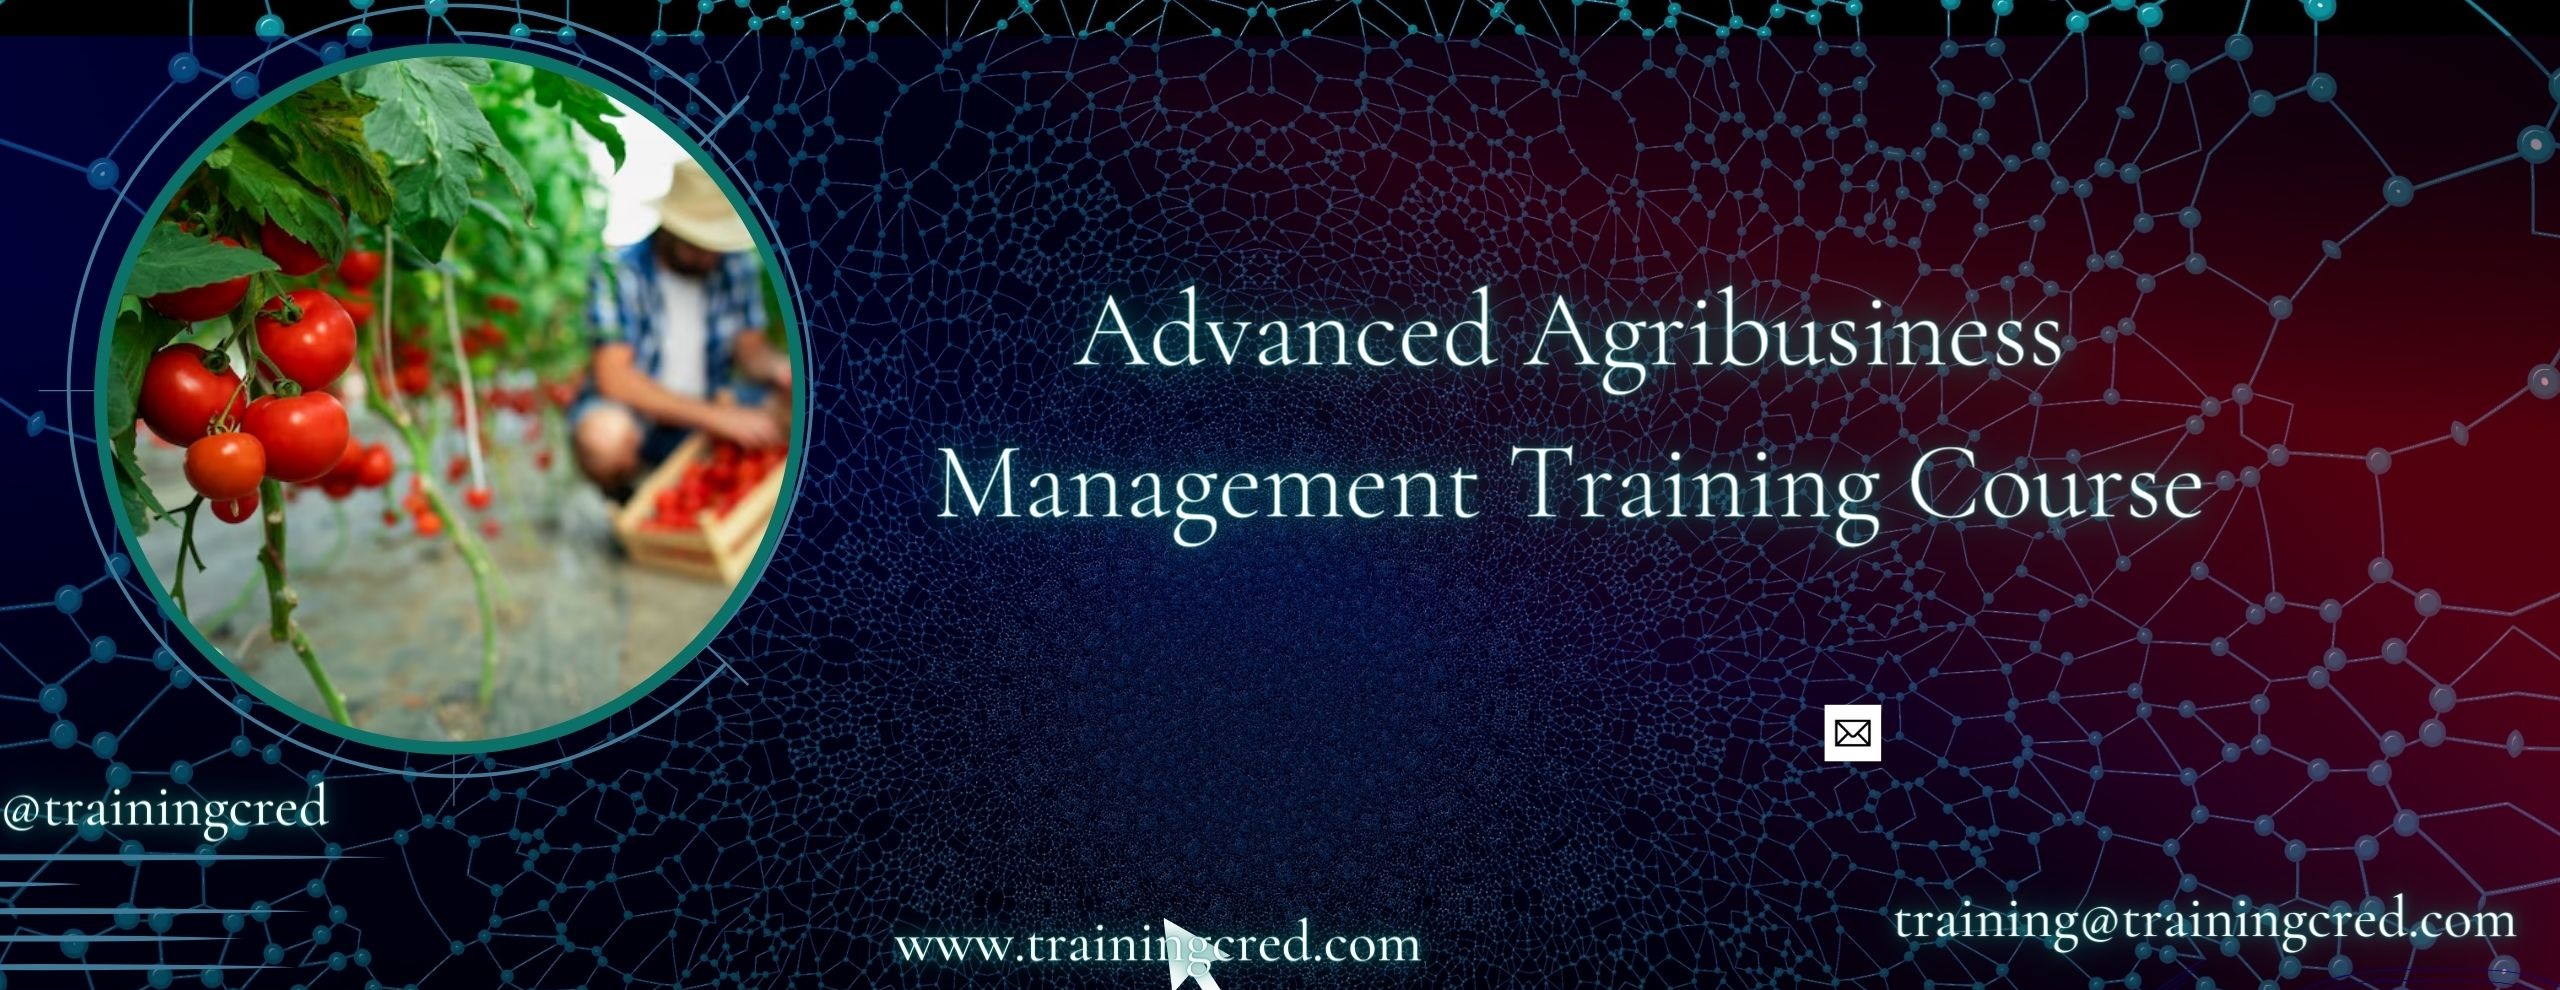 Advanced Agribusiness Management Training